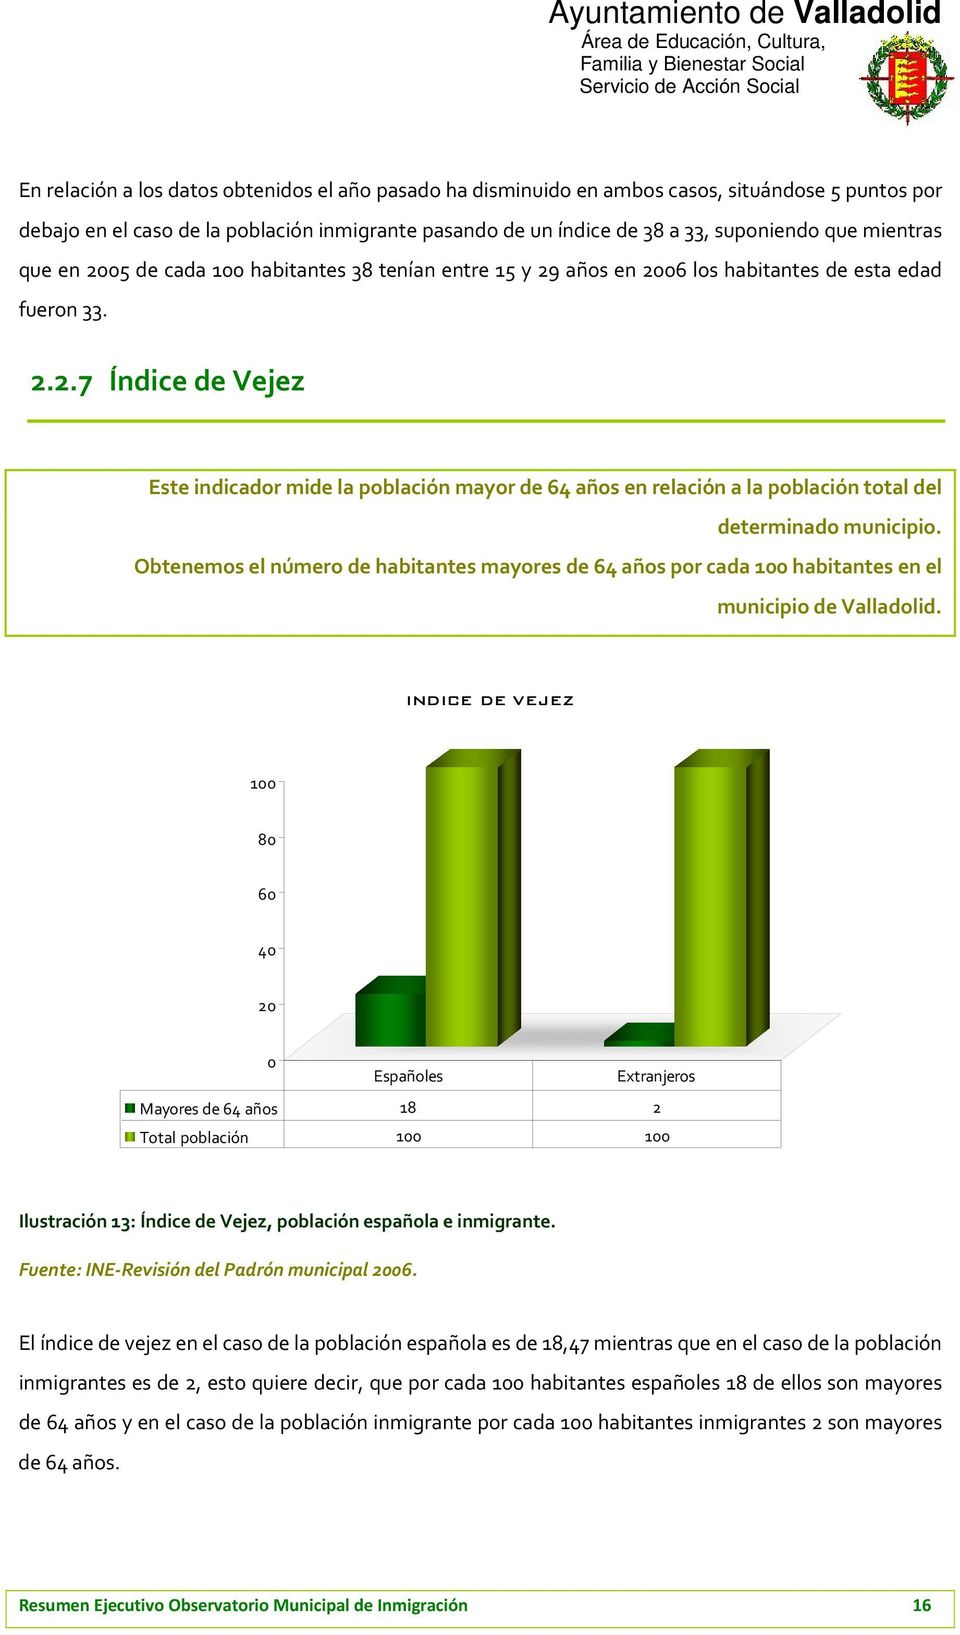 Obtenemos el número de habitantes mayores de 64 años por cada 100 habitantes en el municipio de Valladolid.